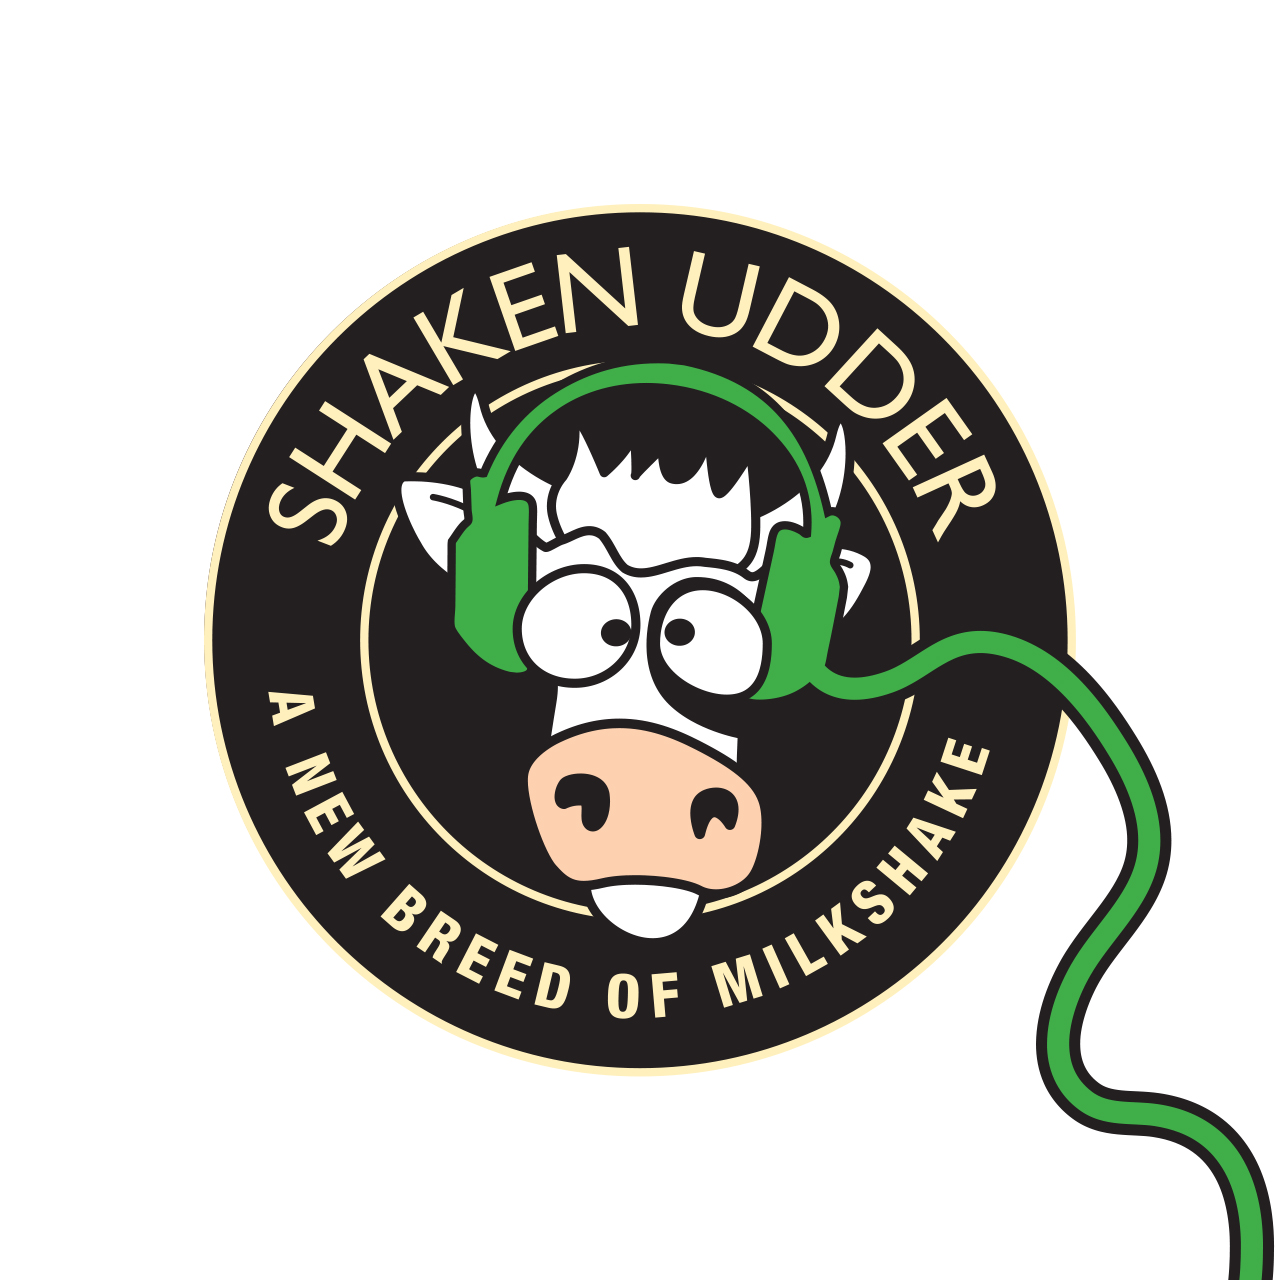 Shaken Udder Spotify logo